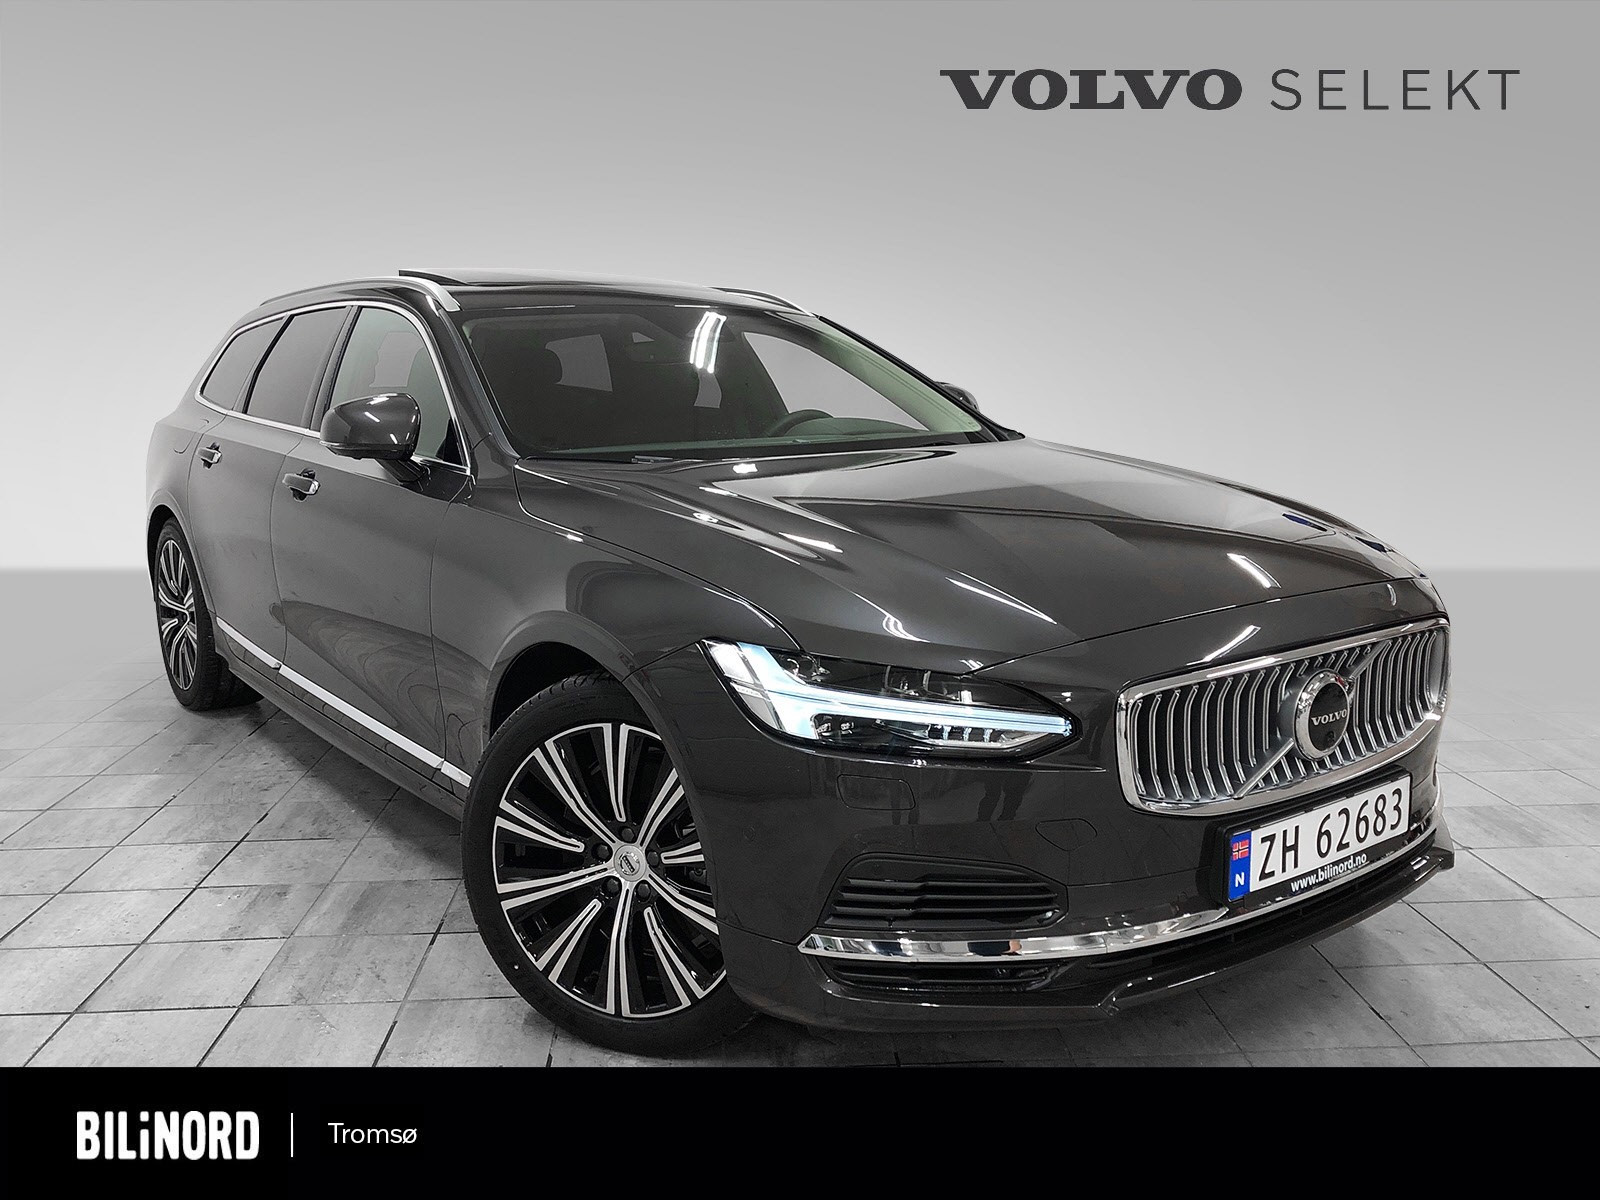 Herlig Volvo V90 med den nydelig Platium grey fargen som må oppleves